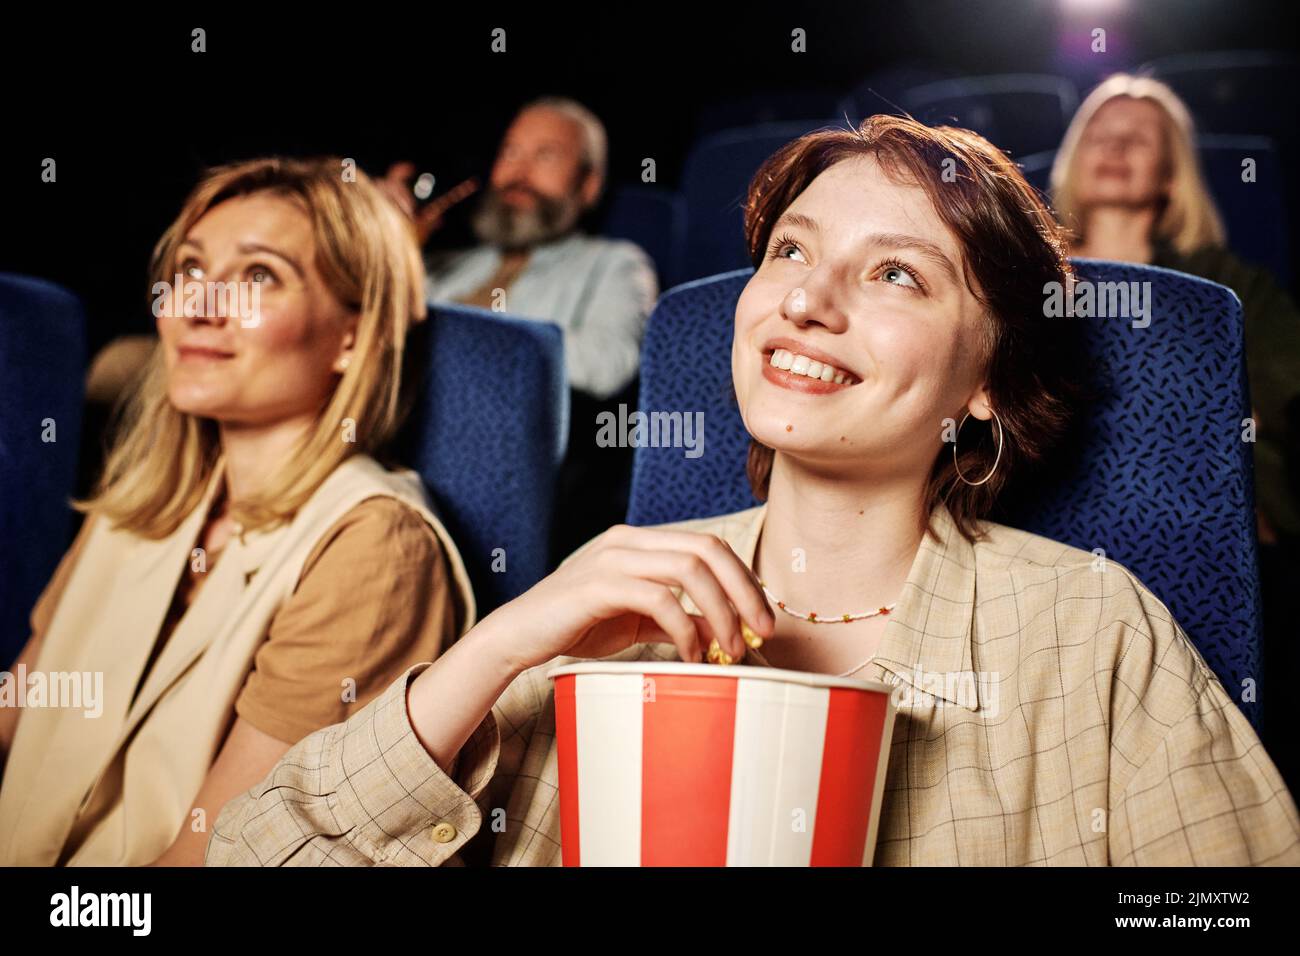 Retrato de la joven y moderna mujer caucásica gen Z disfrutando de una buena película y palomitas de maíz en el cine Foto de stock